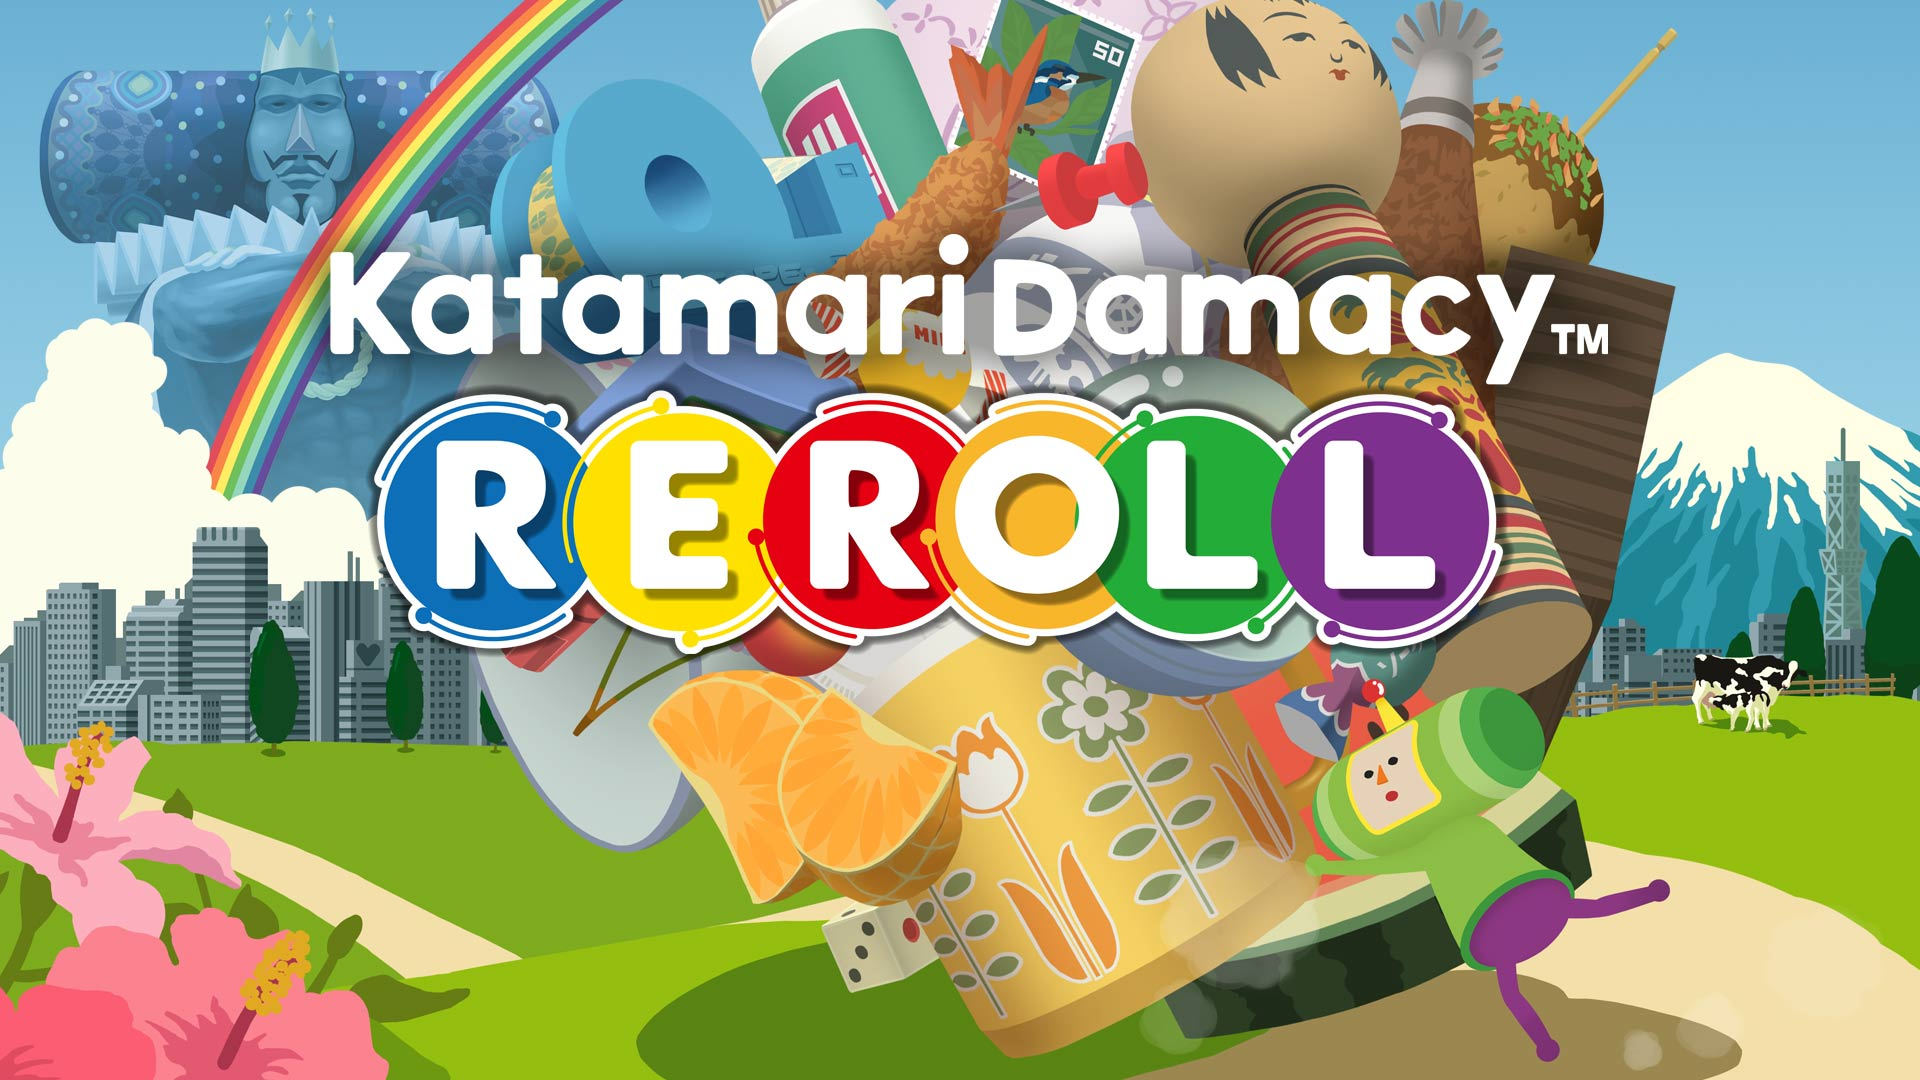 Katamari Damacy REROLL for Nintendo Switch - Digital Download $7.45